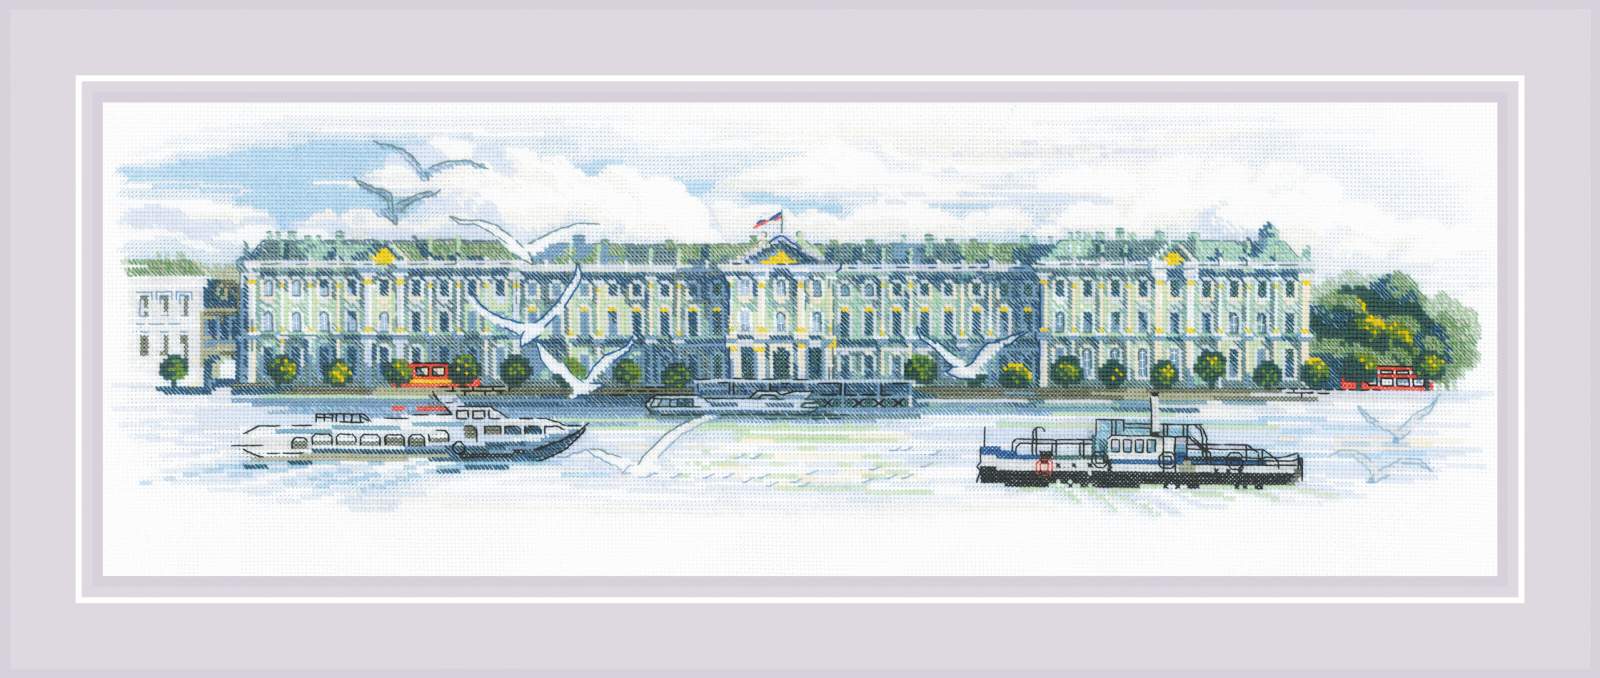 Государственный музей Эрмитаж. Зимний дворец в Петербурге